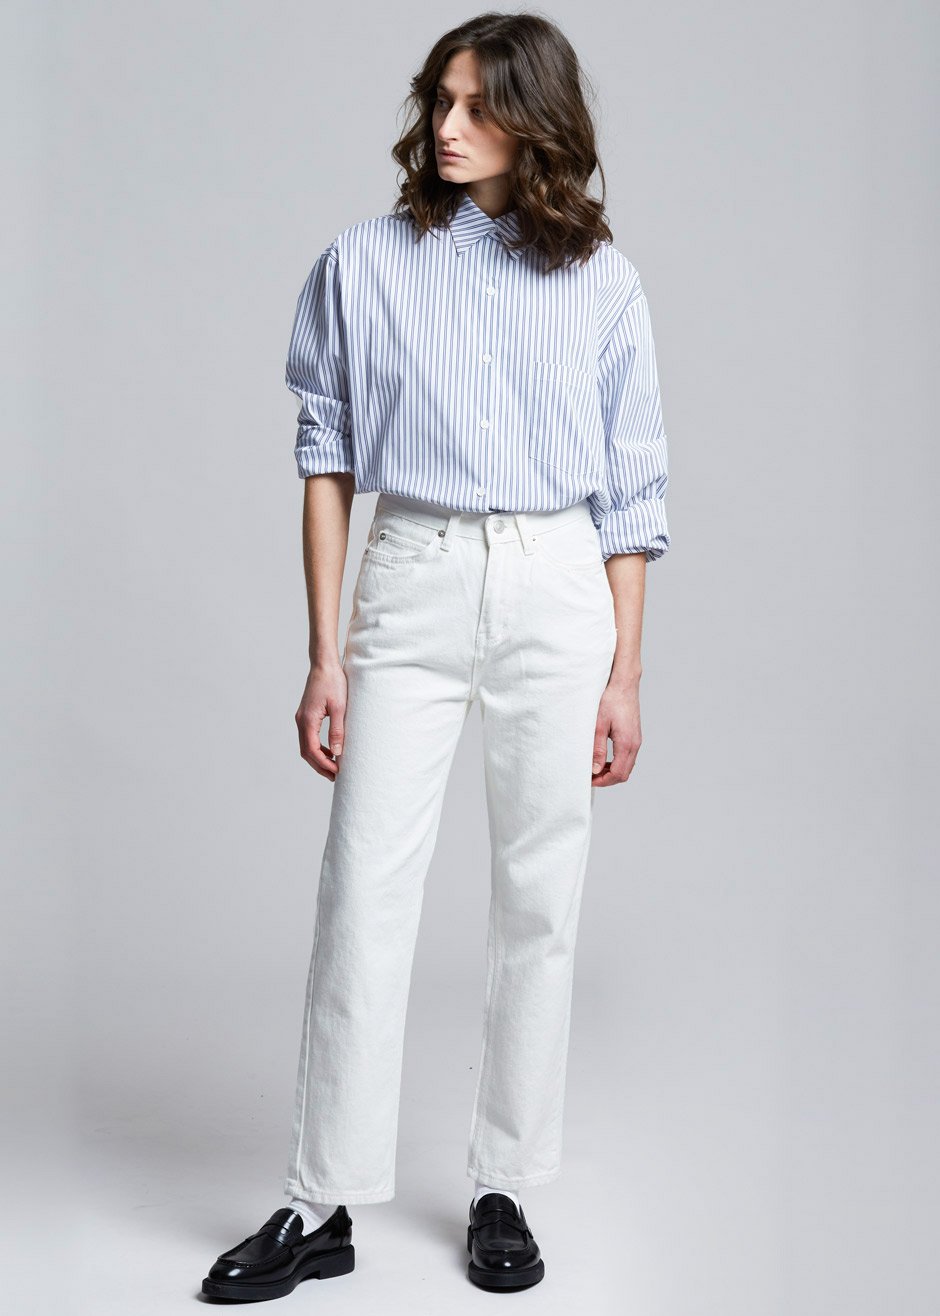 Pinstripe Statement Cuff Shirt in White/Cobalt - 5